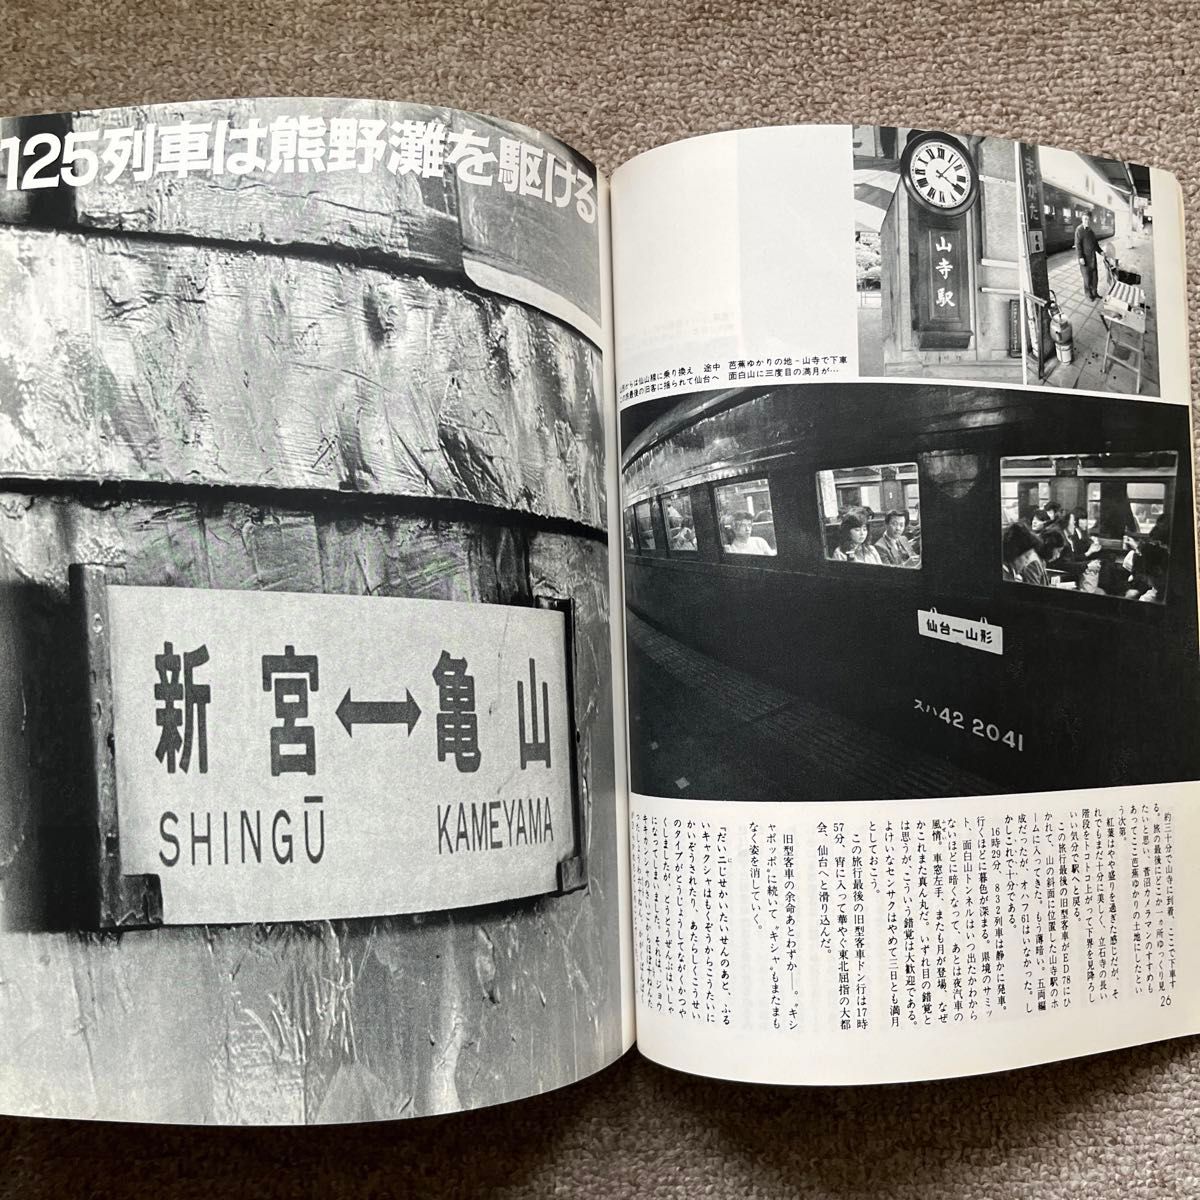 旅と鉄道　'85 冬の号　No.54